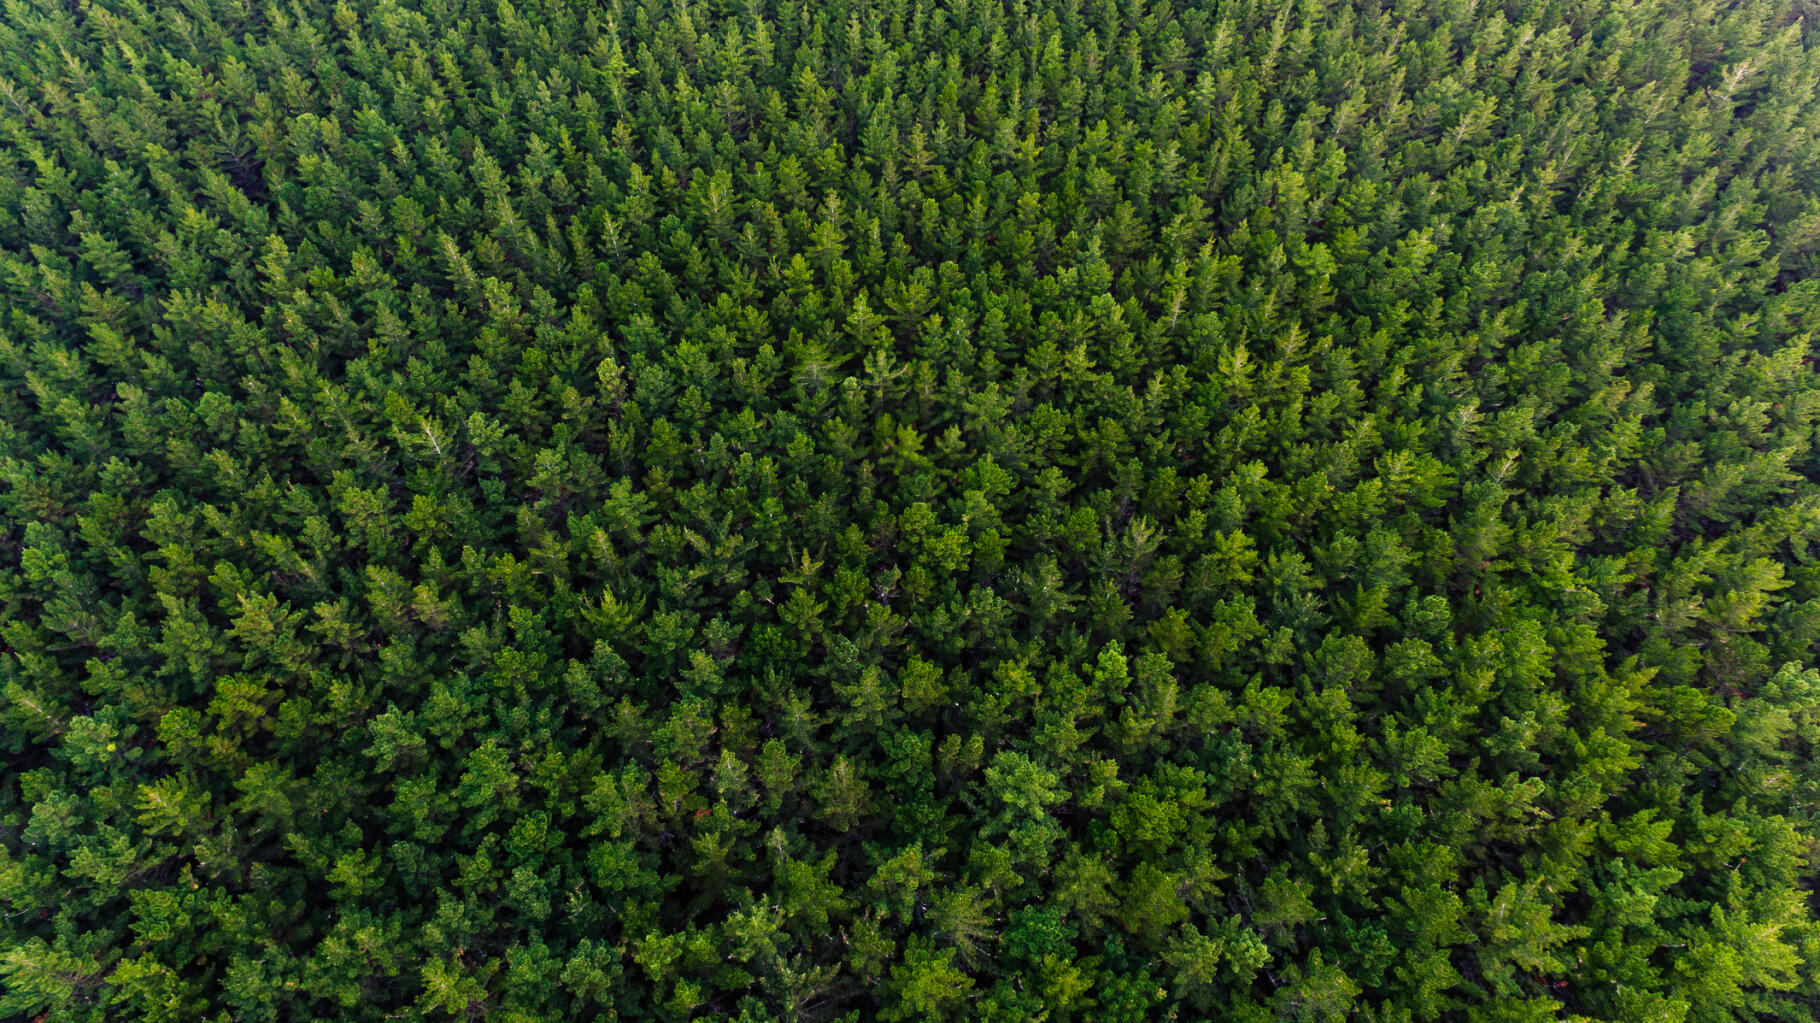 Het planten van bomen zal de planeet niet redden, leggen deze onderzoekers uit